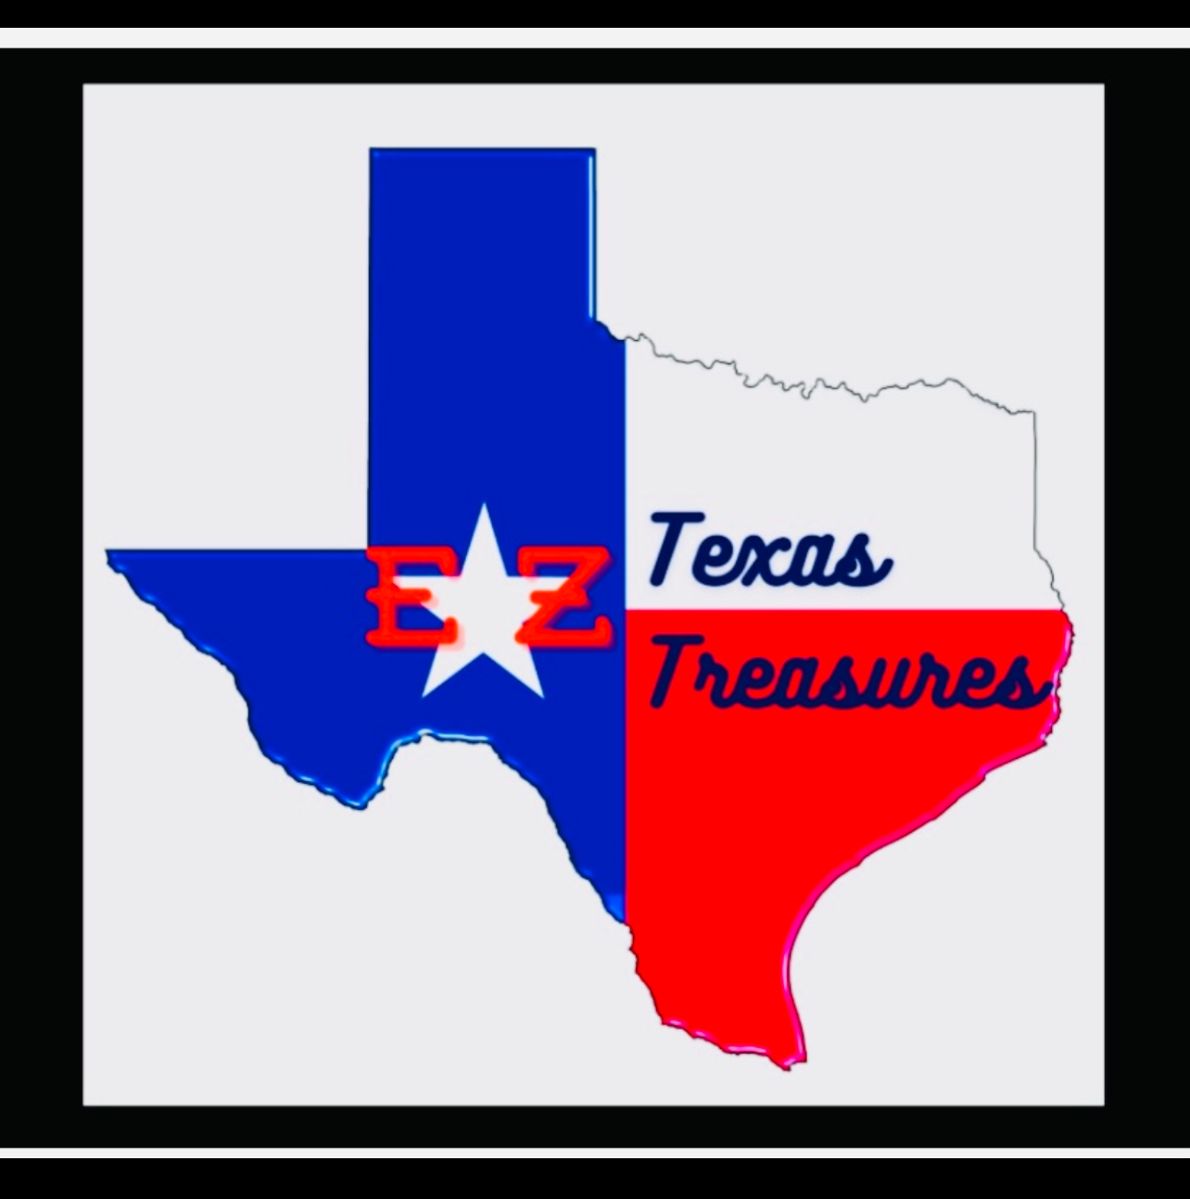 Estate Sales by EZ Texas Treasures 